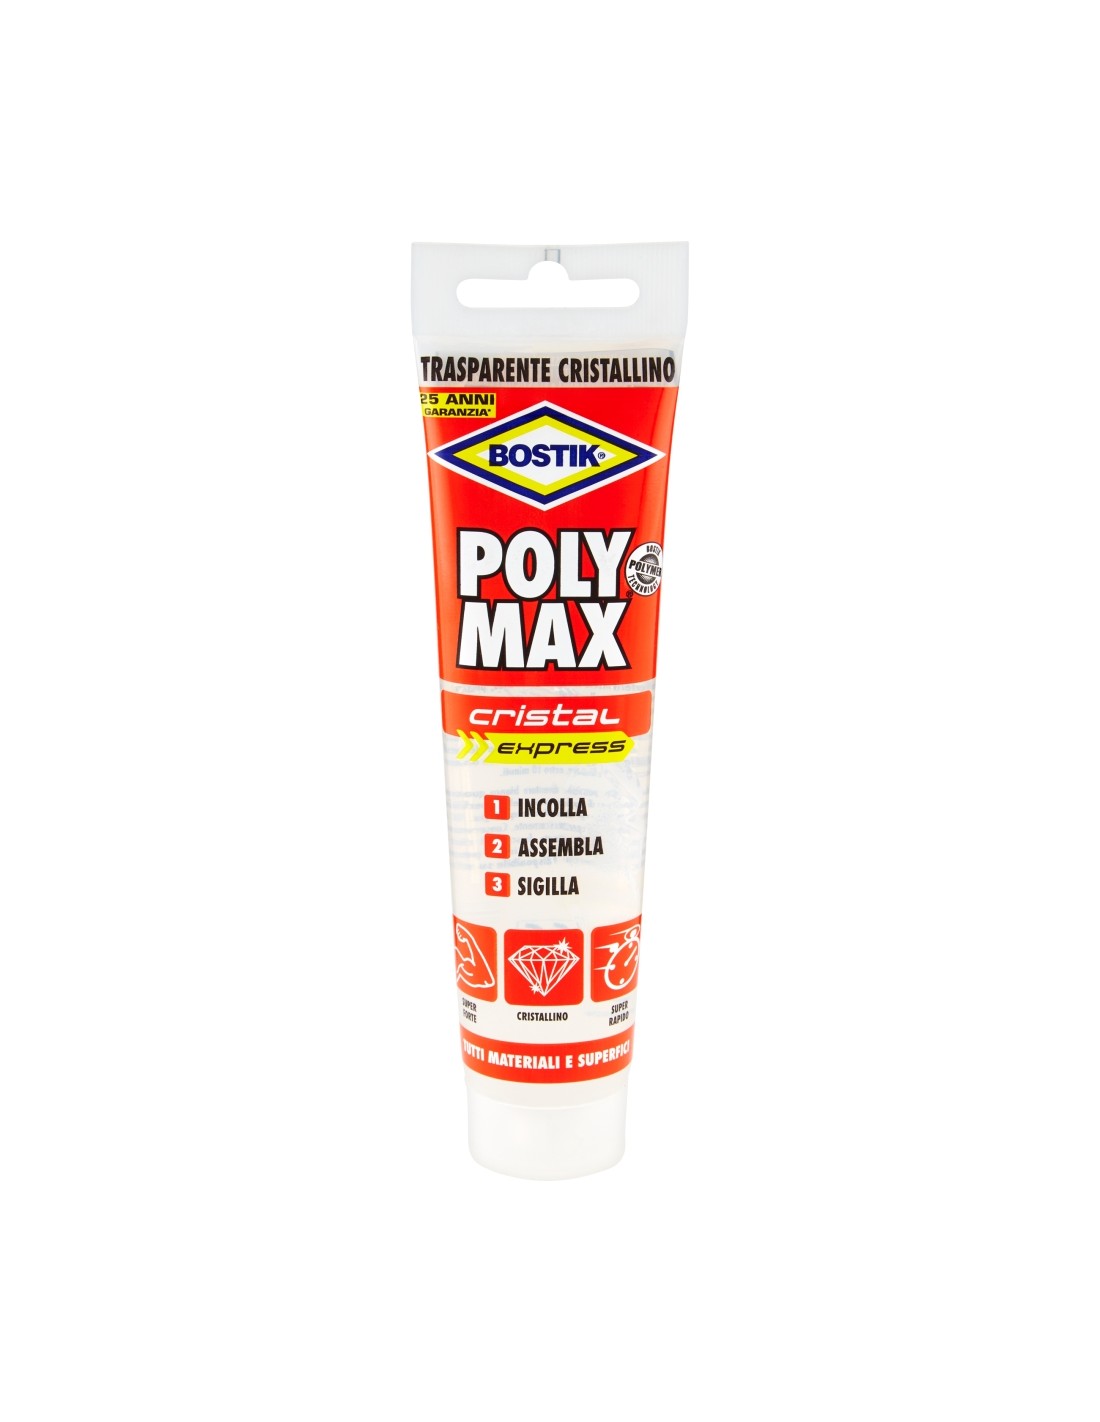 Bostik Poly Max Cristal Express cartuccia 115gr